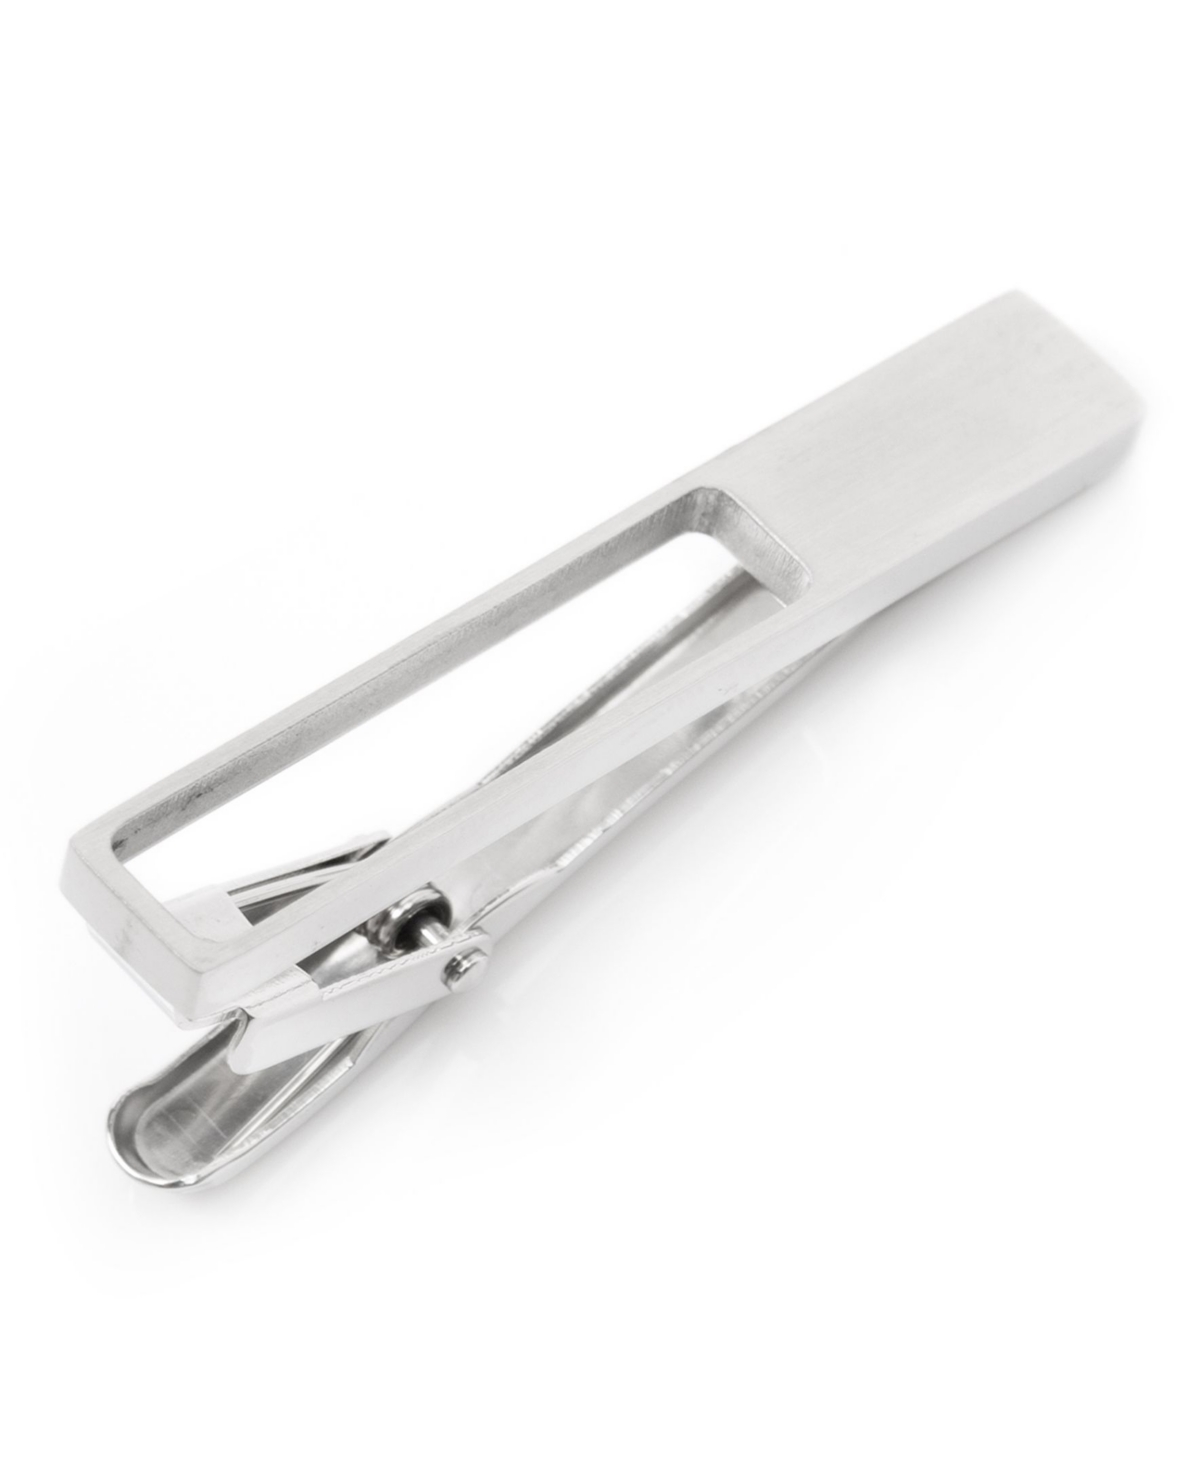 Men's Die Cut Metal Stainless Steel Tie Clip - Silver